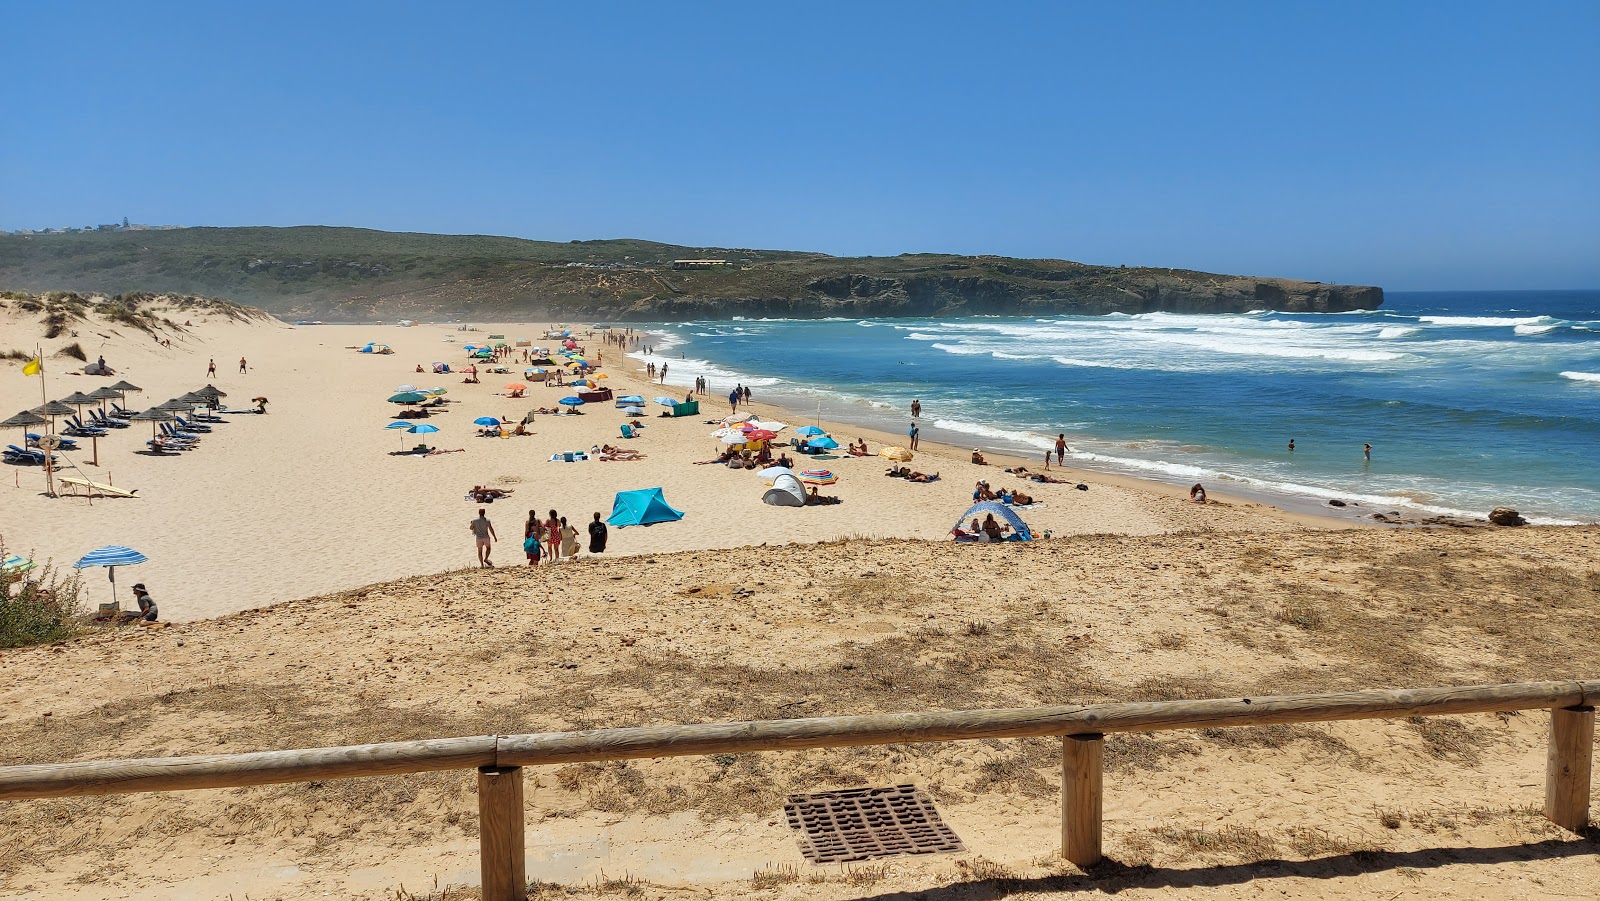 Praia da Amoreira'in fotoğrafı - rahatlamayı sevenler arasında popüler bir yer